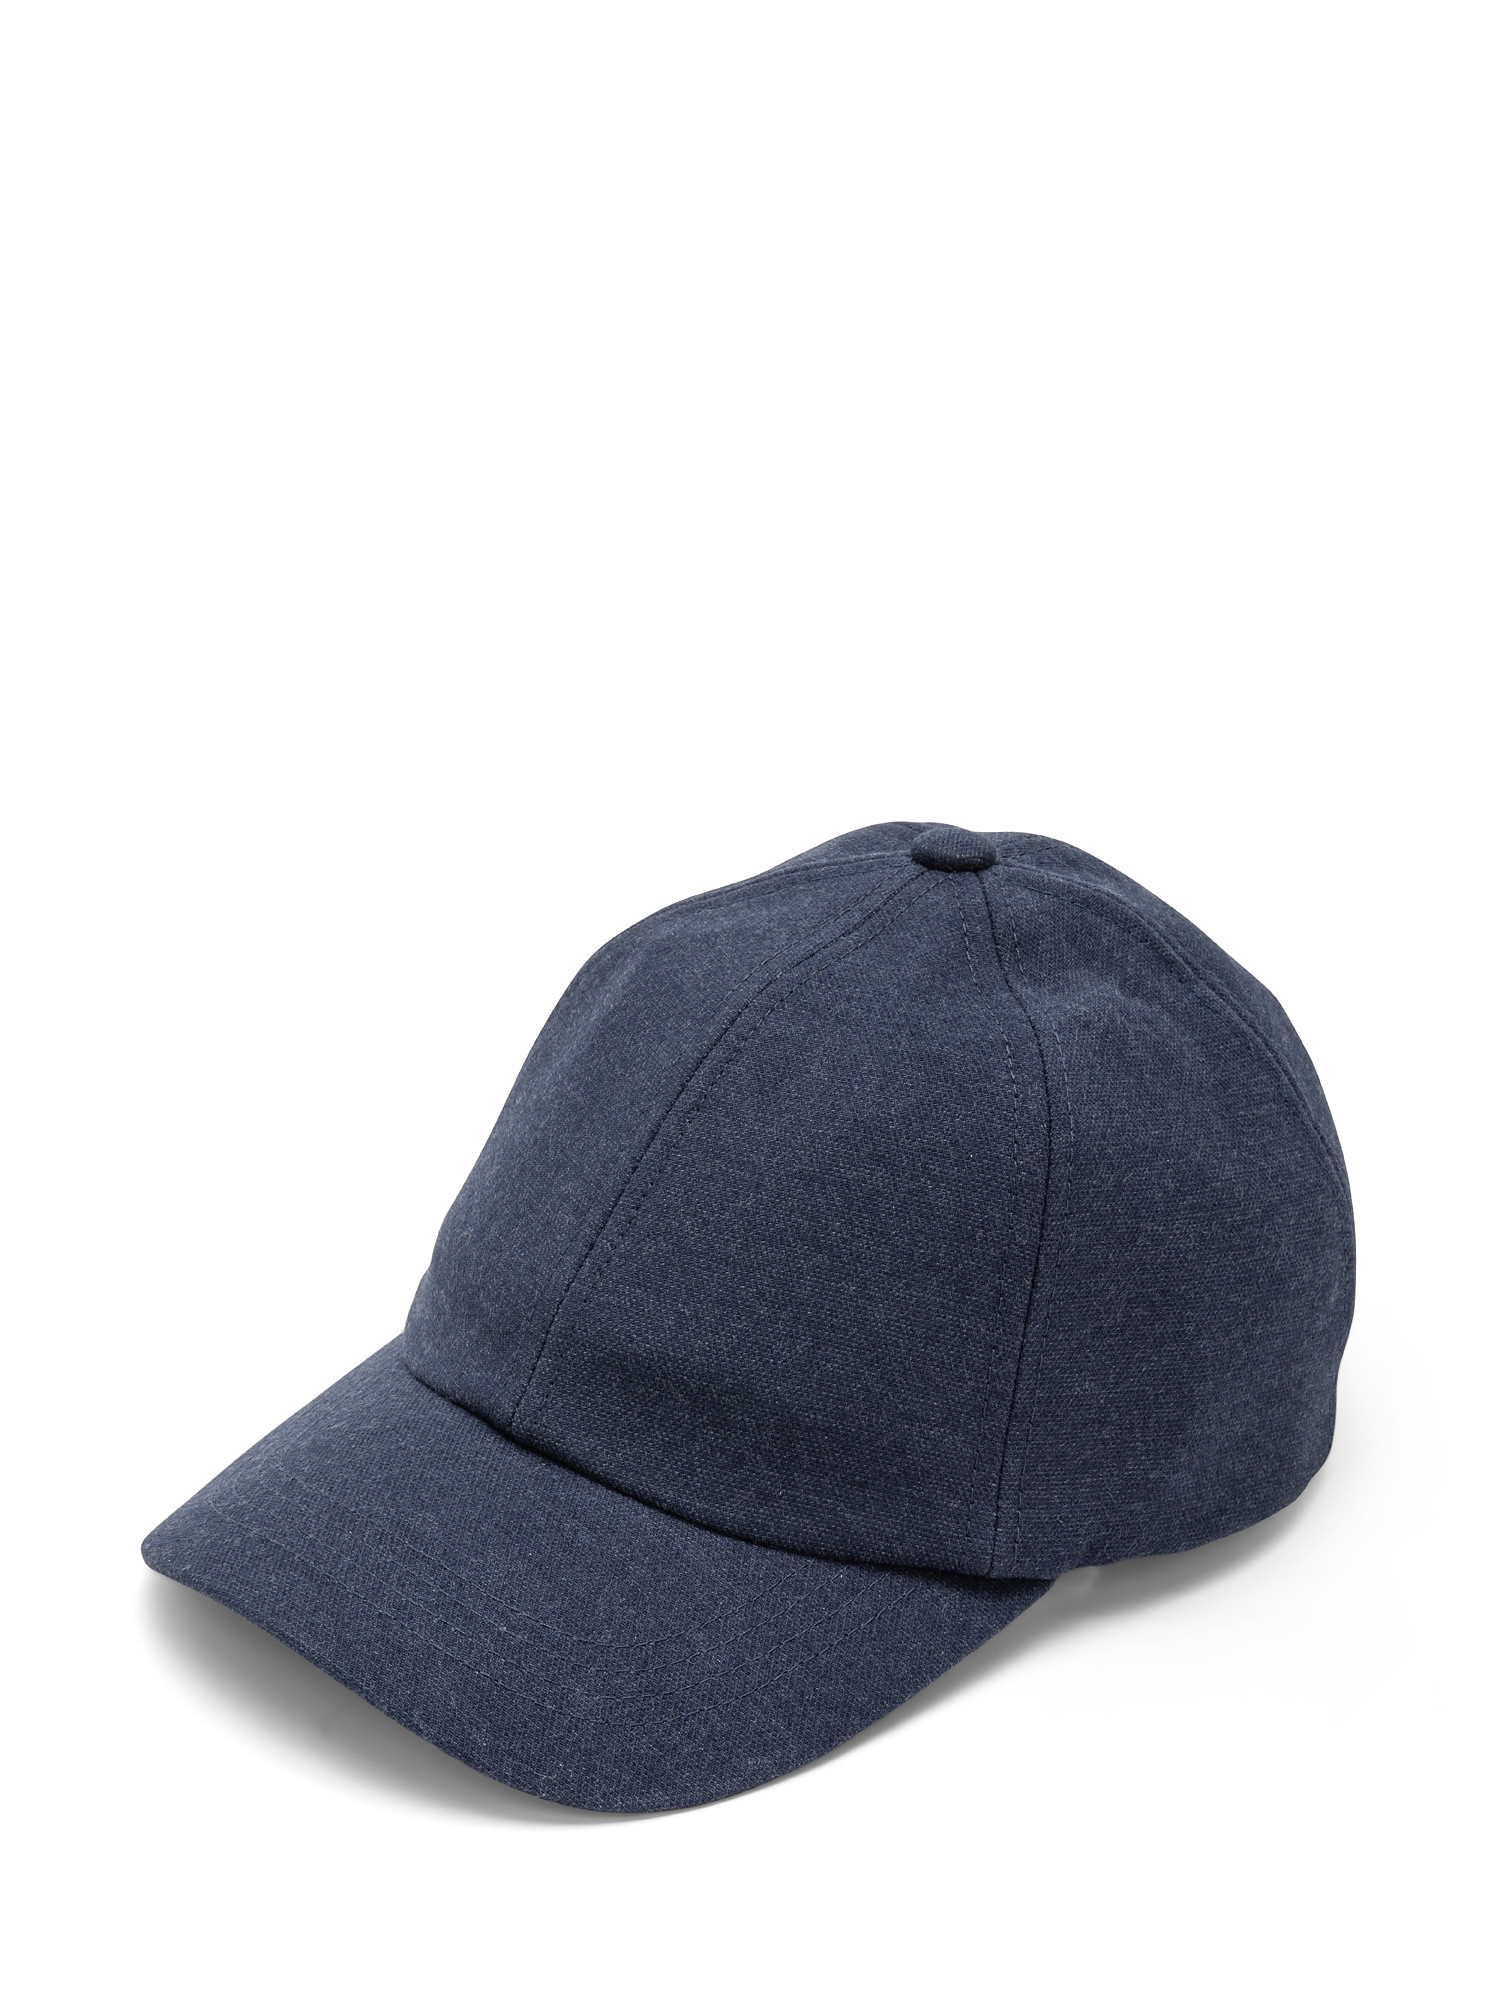 Baseball hat, Blue, large image number 0